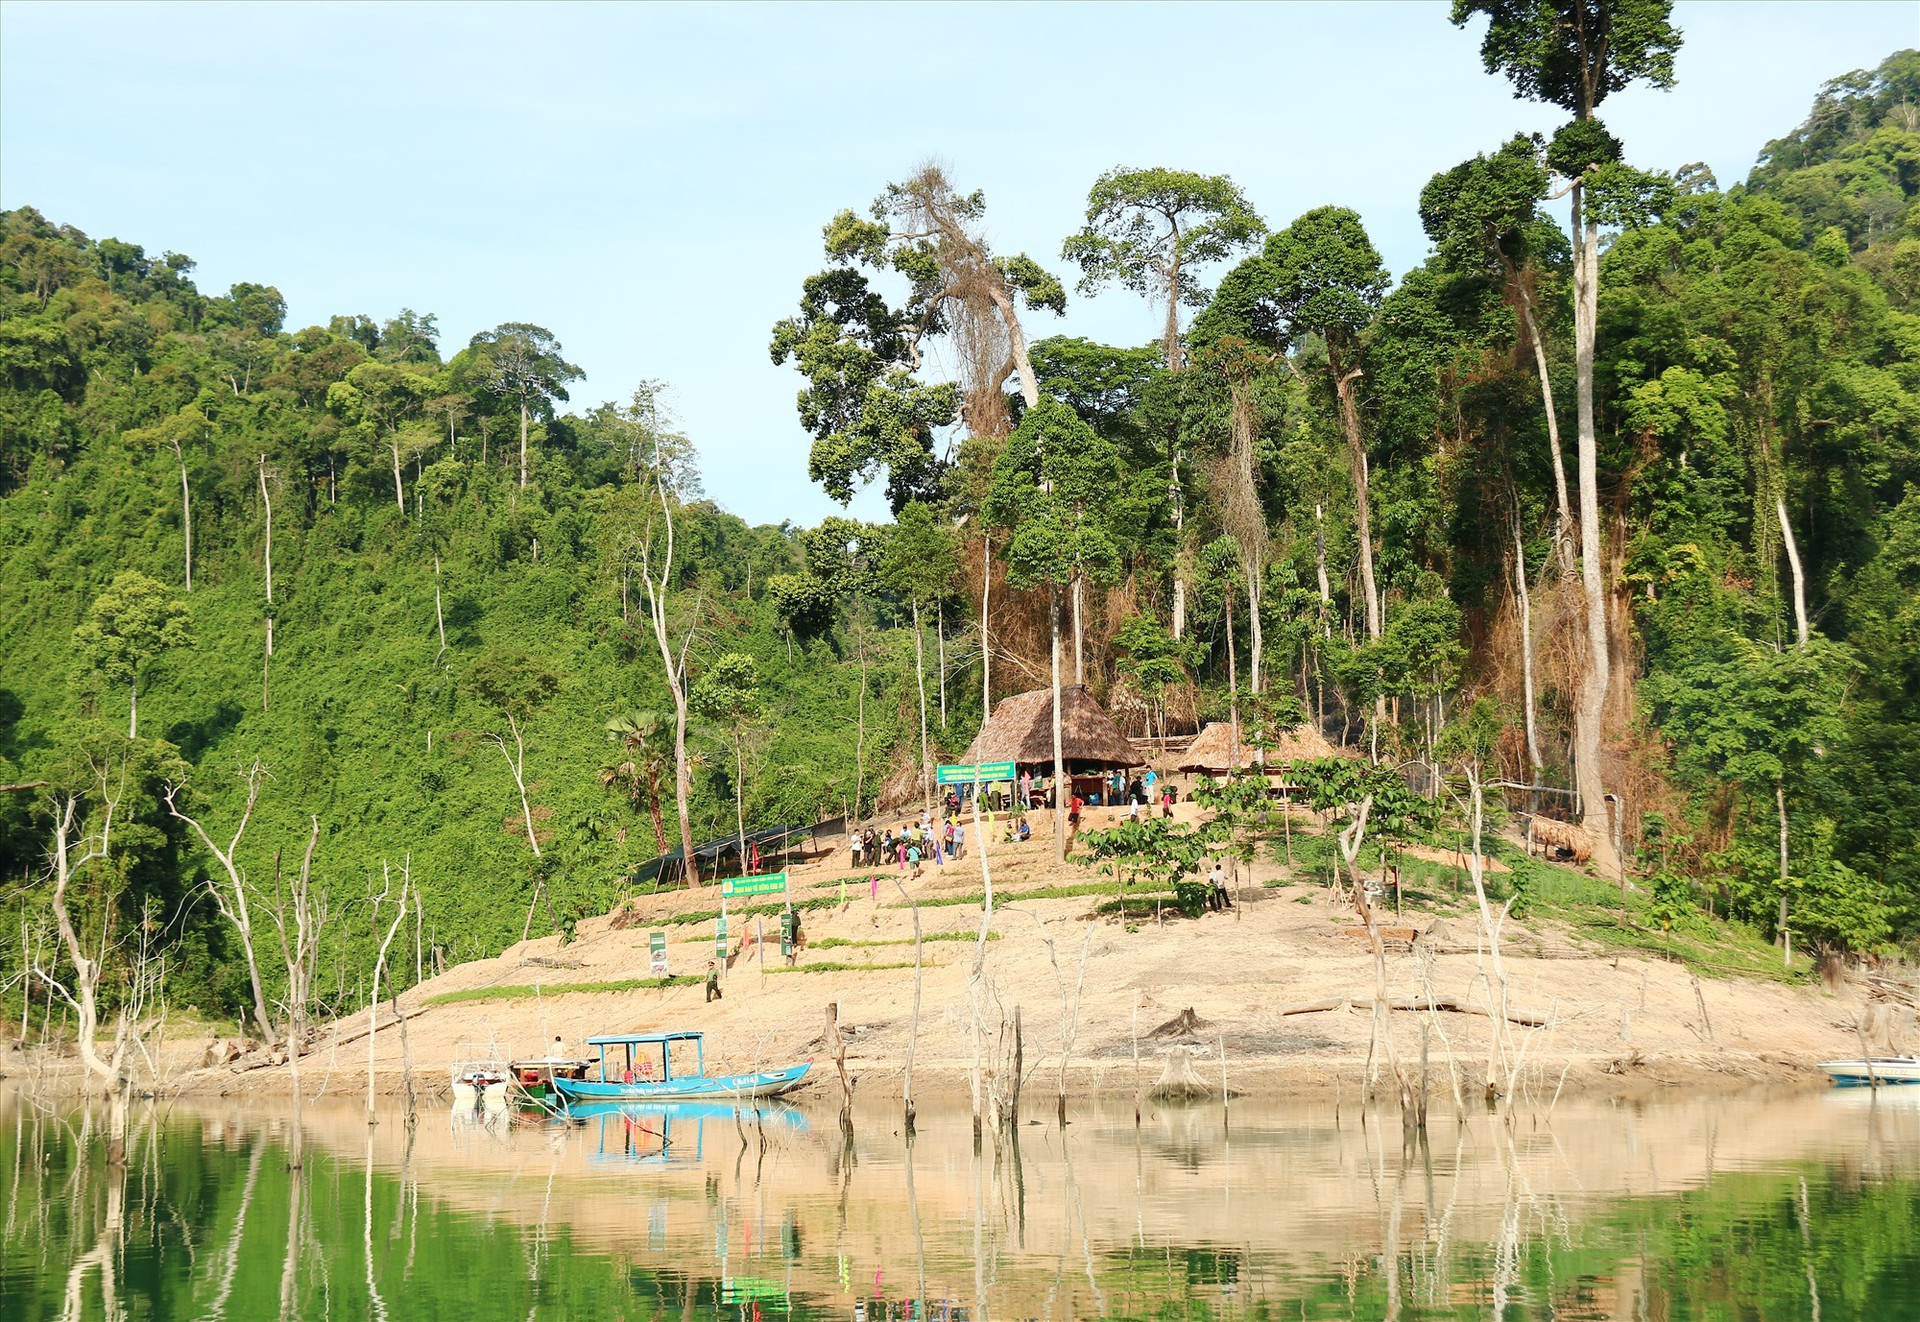 Một trạm bảo vệ rừng khu vực Khe Ru nằm trong lâm phận Vườn quốc gia Sông Thanh. Ảnh: HP